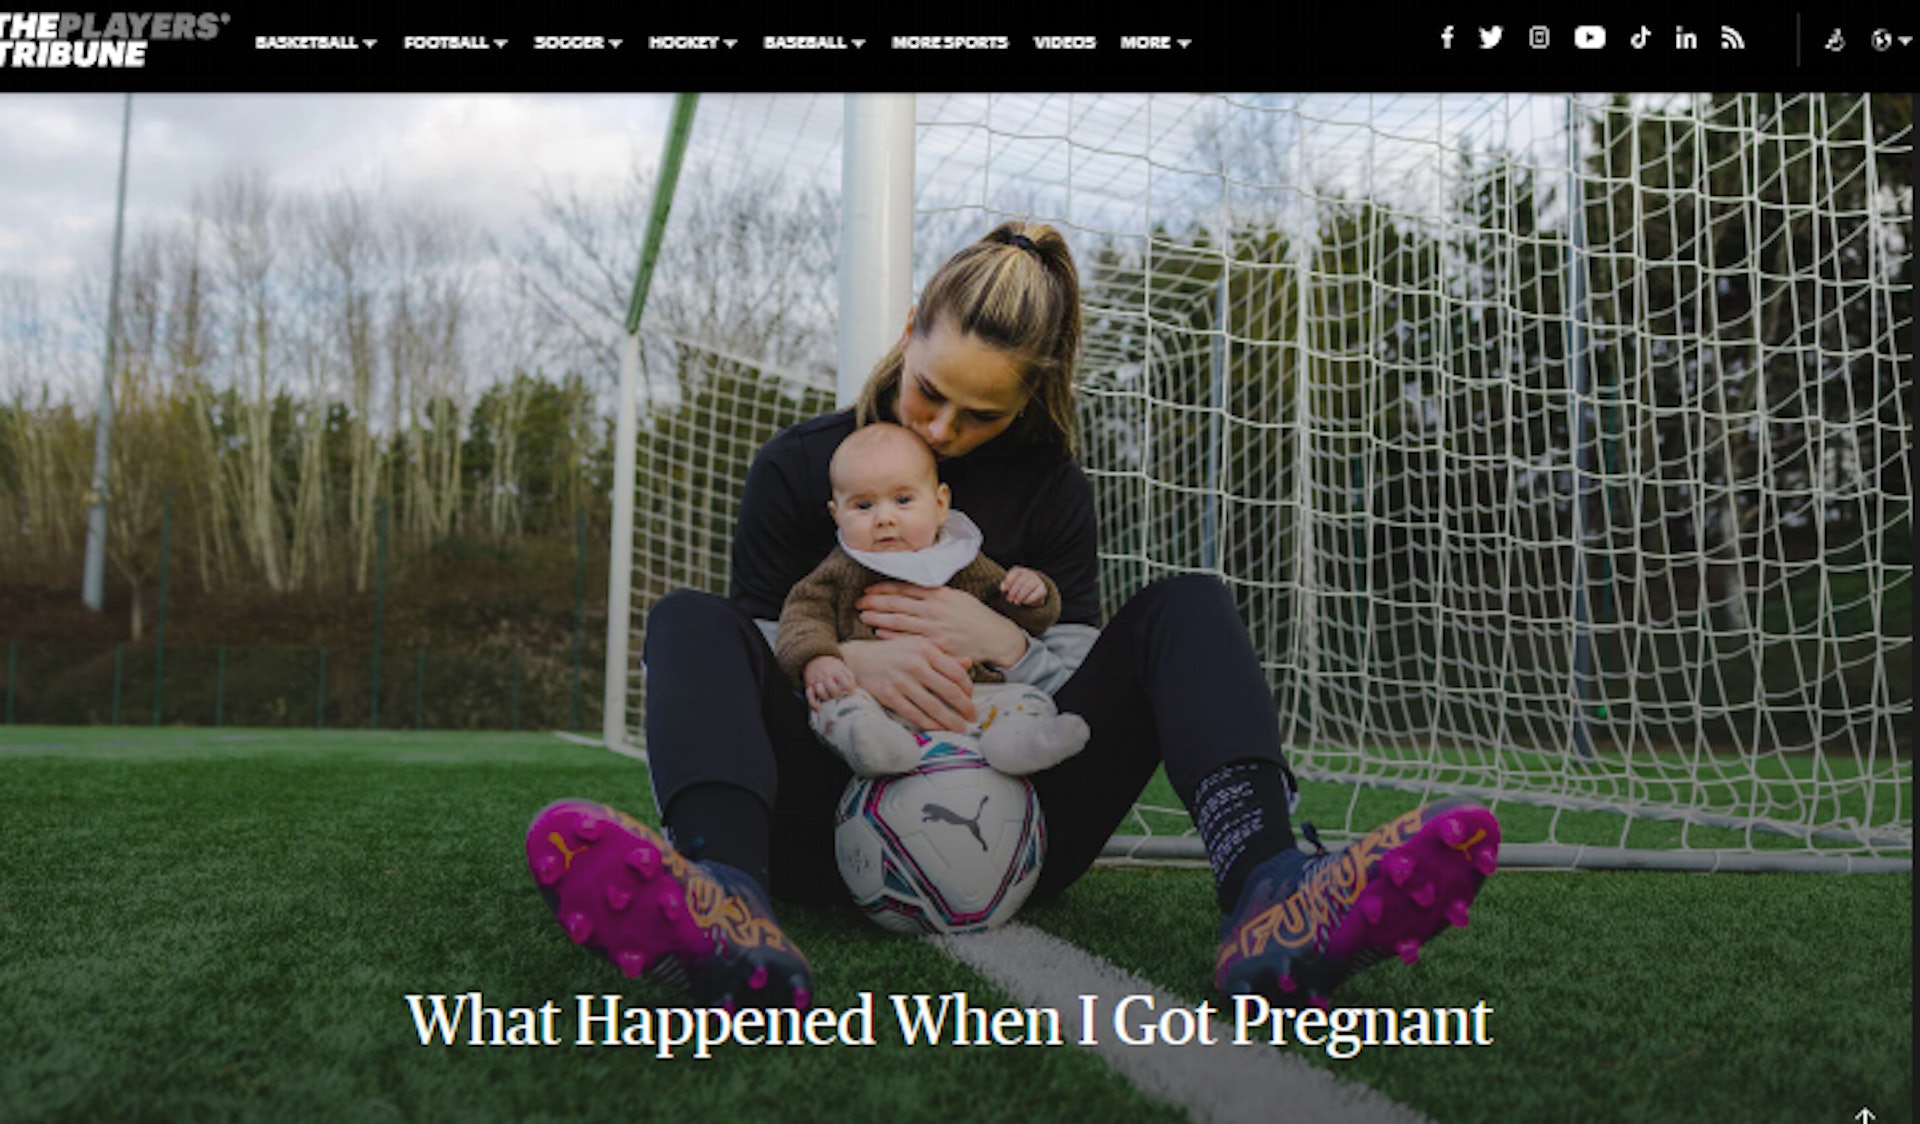 碧玉親自撰文講述懷孕期間球會里昂的無理待遇。（The Players' Tribune網頁截圖）